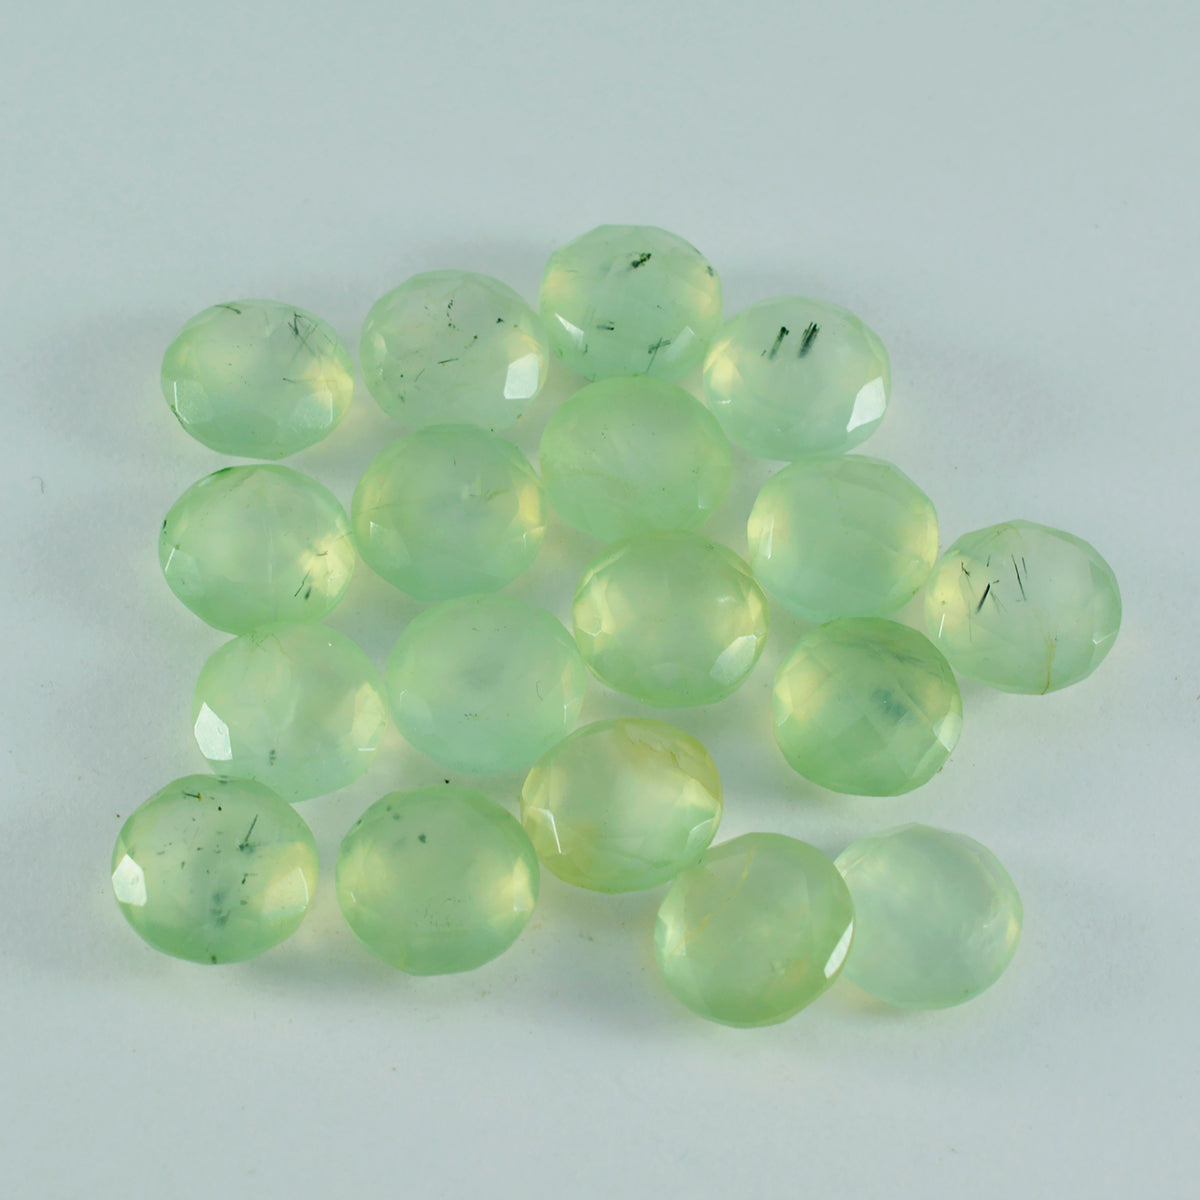 riyogems 1 pieza de prehnita verde facetada de 7x7 mm, forma redonda, una piedra preciosa suelta de calidad